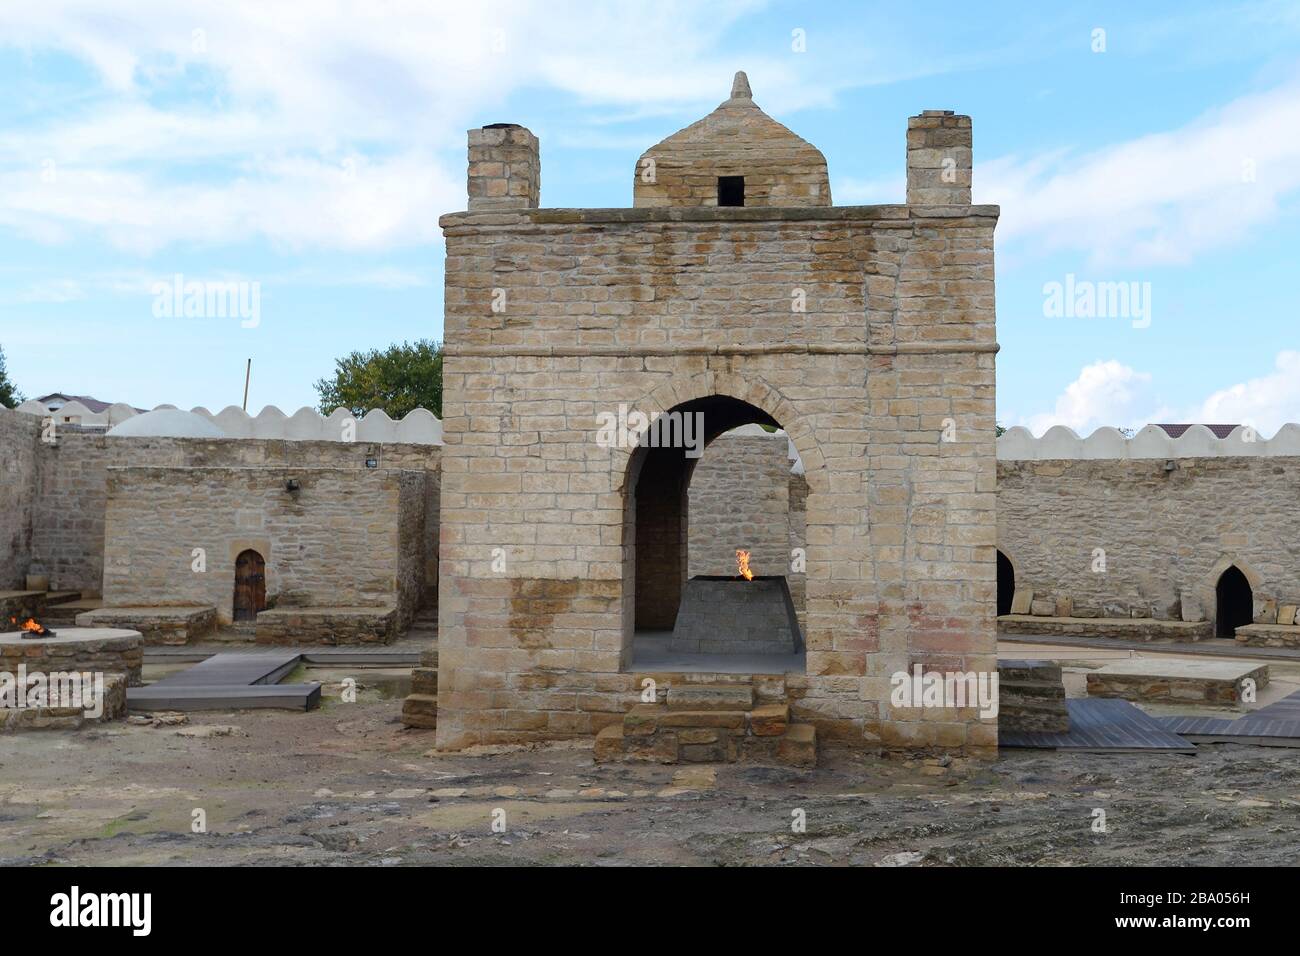 Zentraltempel am Atashgah-Tempel staatliches historisches Architekturreservat in der Nähe von Baku, Aserbaidschan. Feuertempel von Baku zeigt eine Flamme für Zoroastrier. Stockfoto